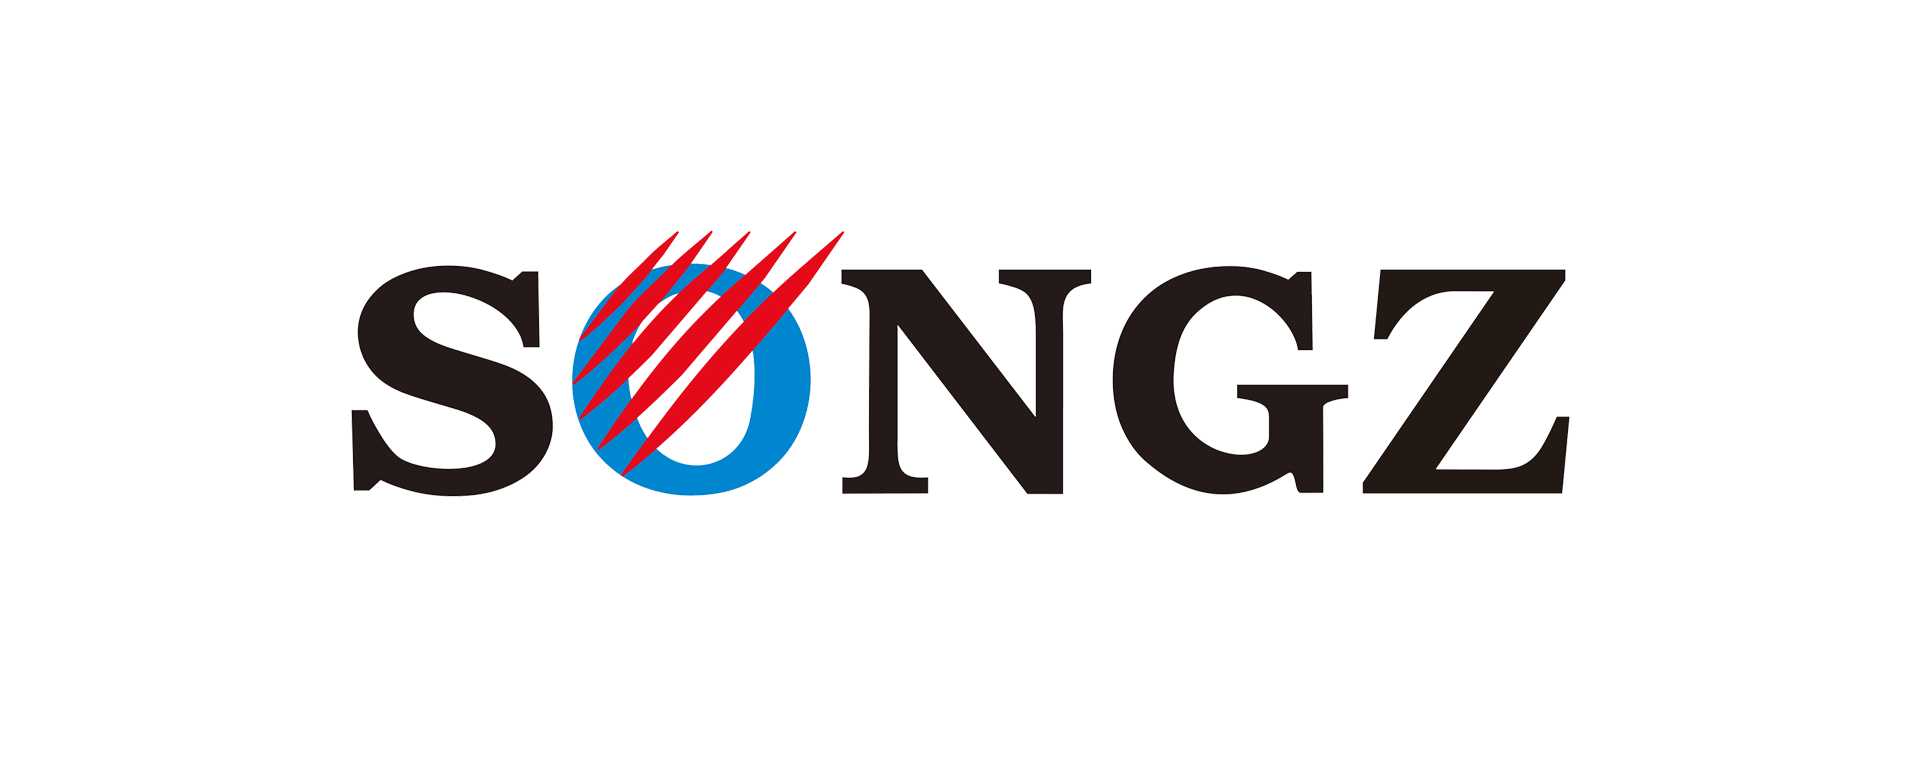 songz logo